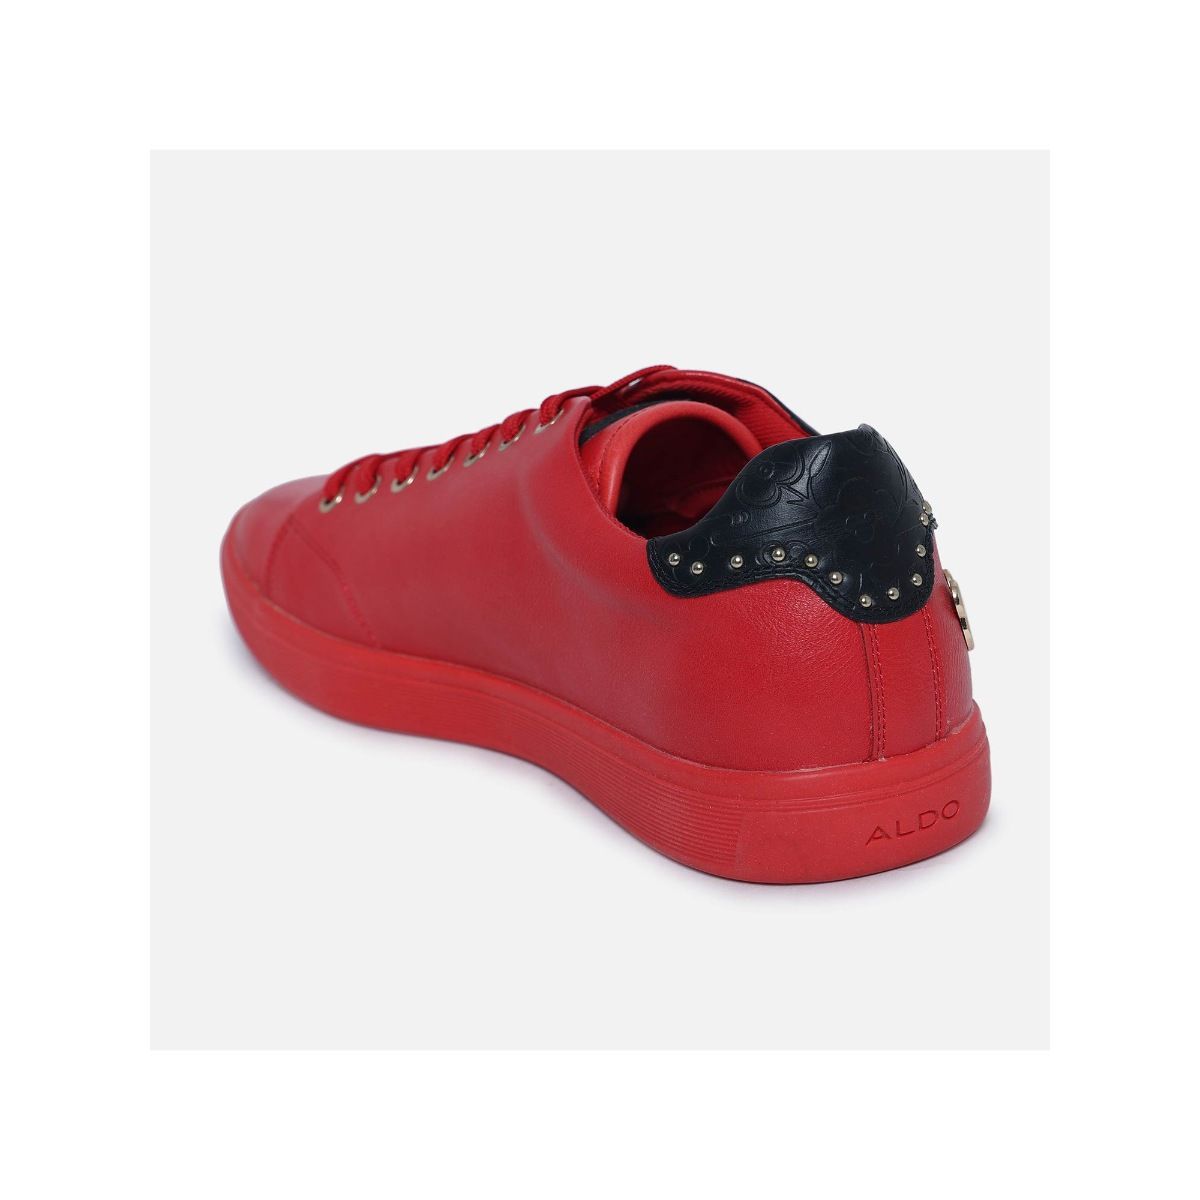 ALDO Sneakers For Women - Buy ALDO Sneakers For Women Online at Best Price  - Shop Online for Footwears in India | Flipkart.com